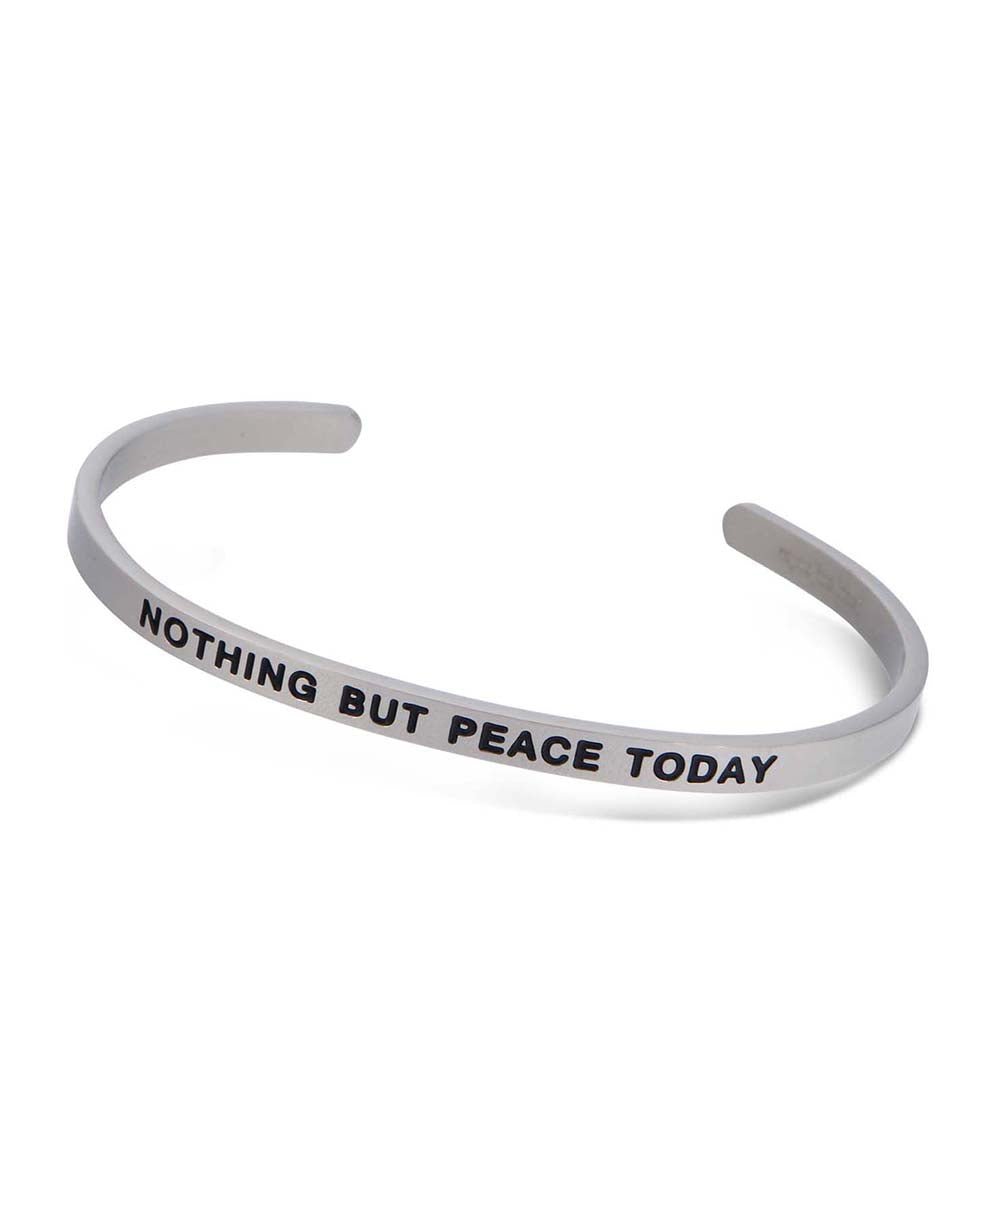 Inspirational Cuff Bracelet, Nothing But Peace Today - Bracelets